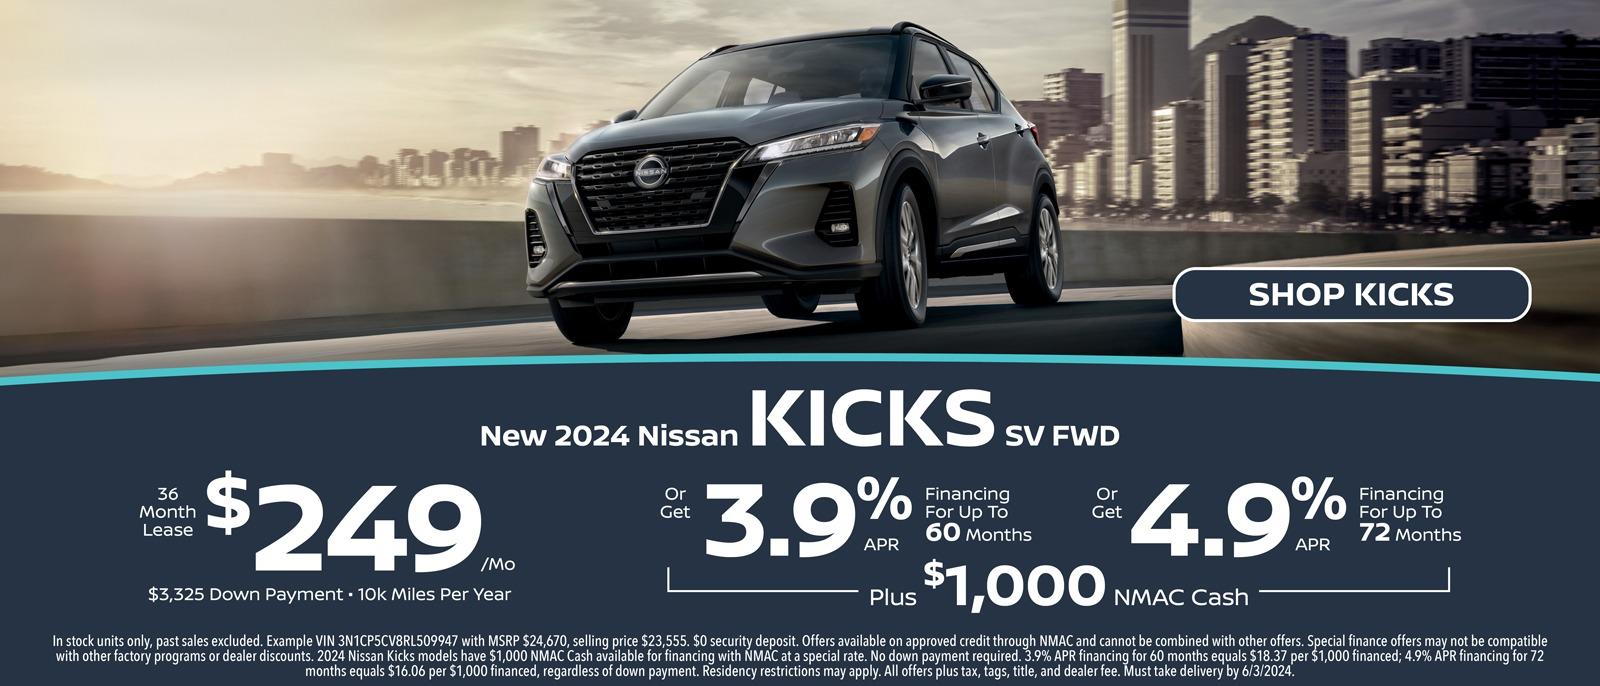 New 2024 Nissan Kicks SV FWD